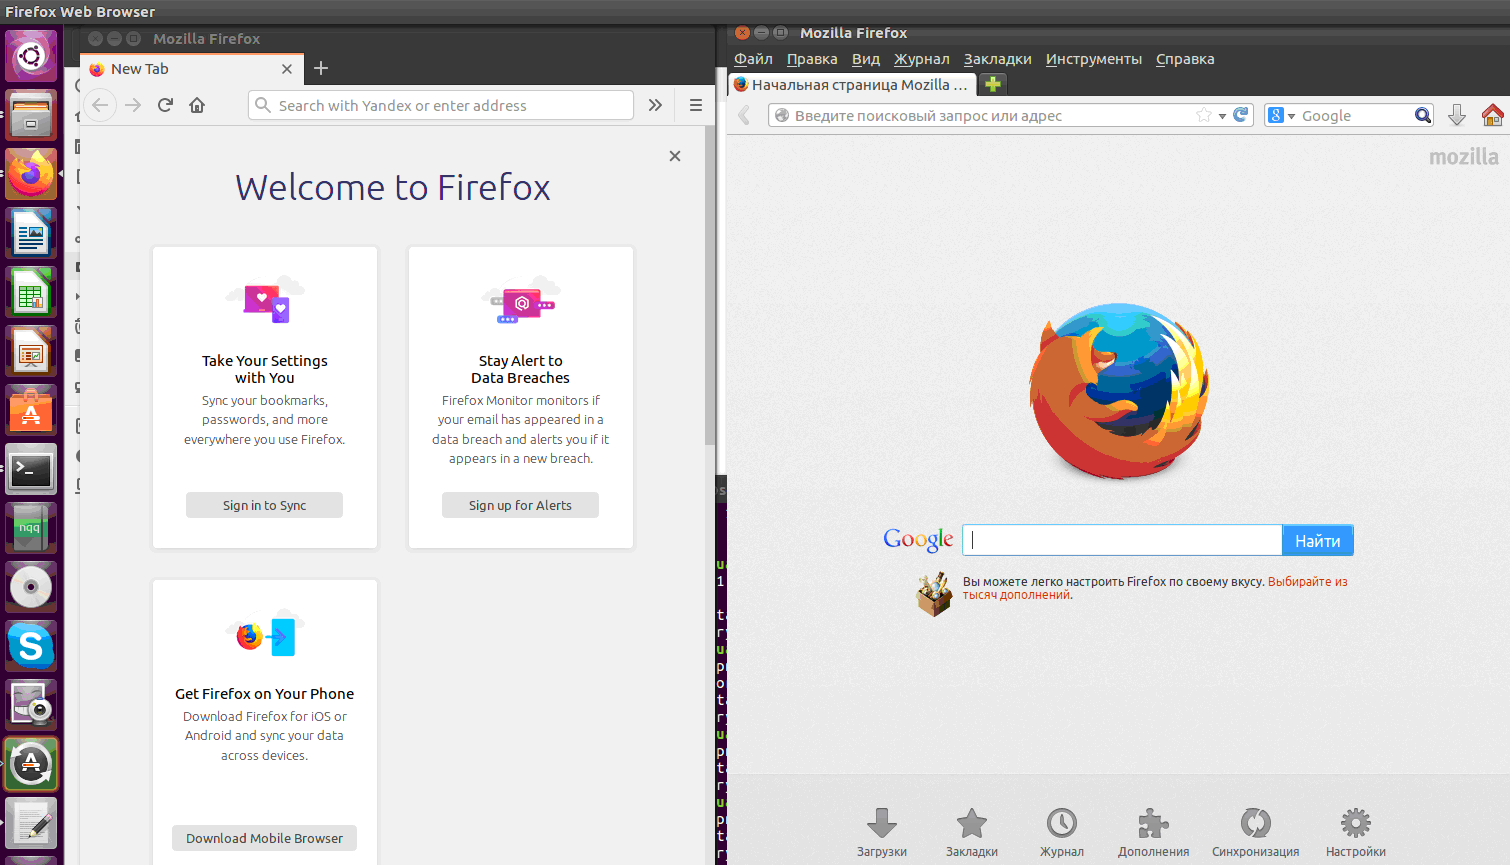 Запустились два браузера одновременно: Firefox 24 и firefox 70 в Linux Ubuntu